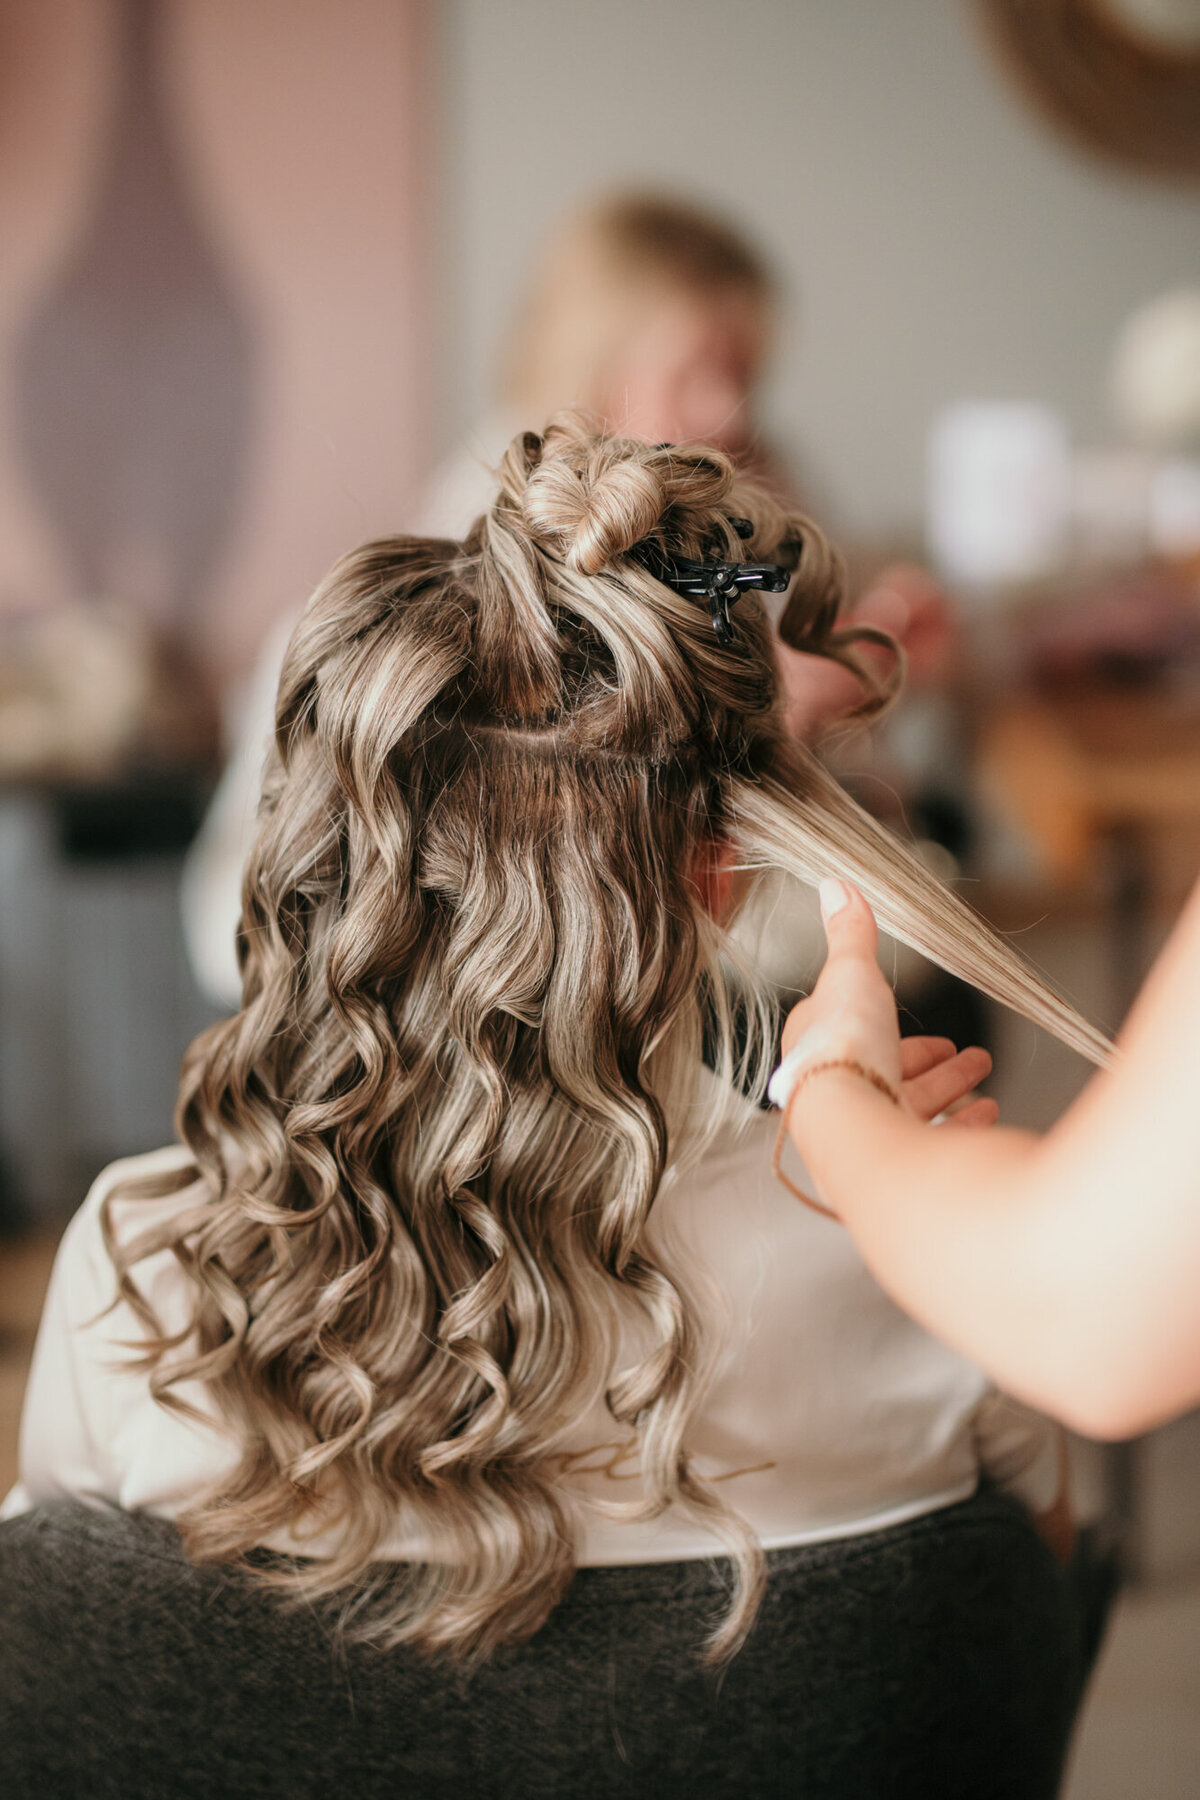 Der Braut werden lockere Wellen in ihre langen blonden Haare gemacht für ihre Brautfrisur.